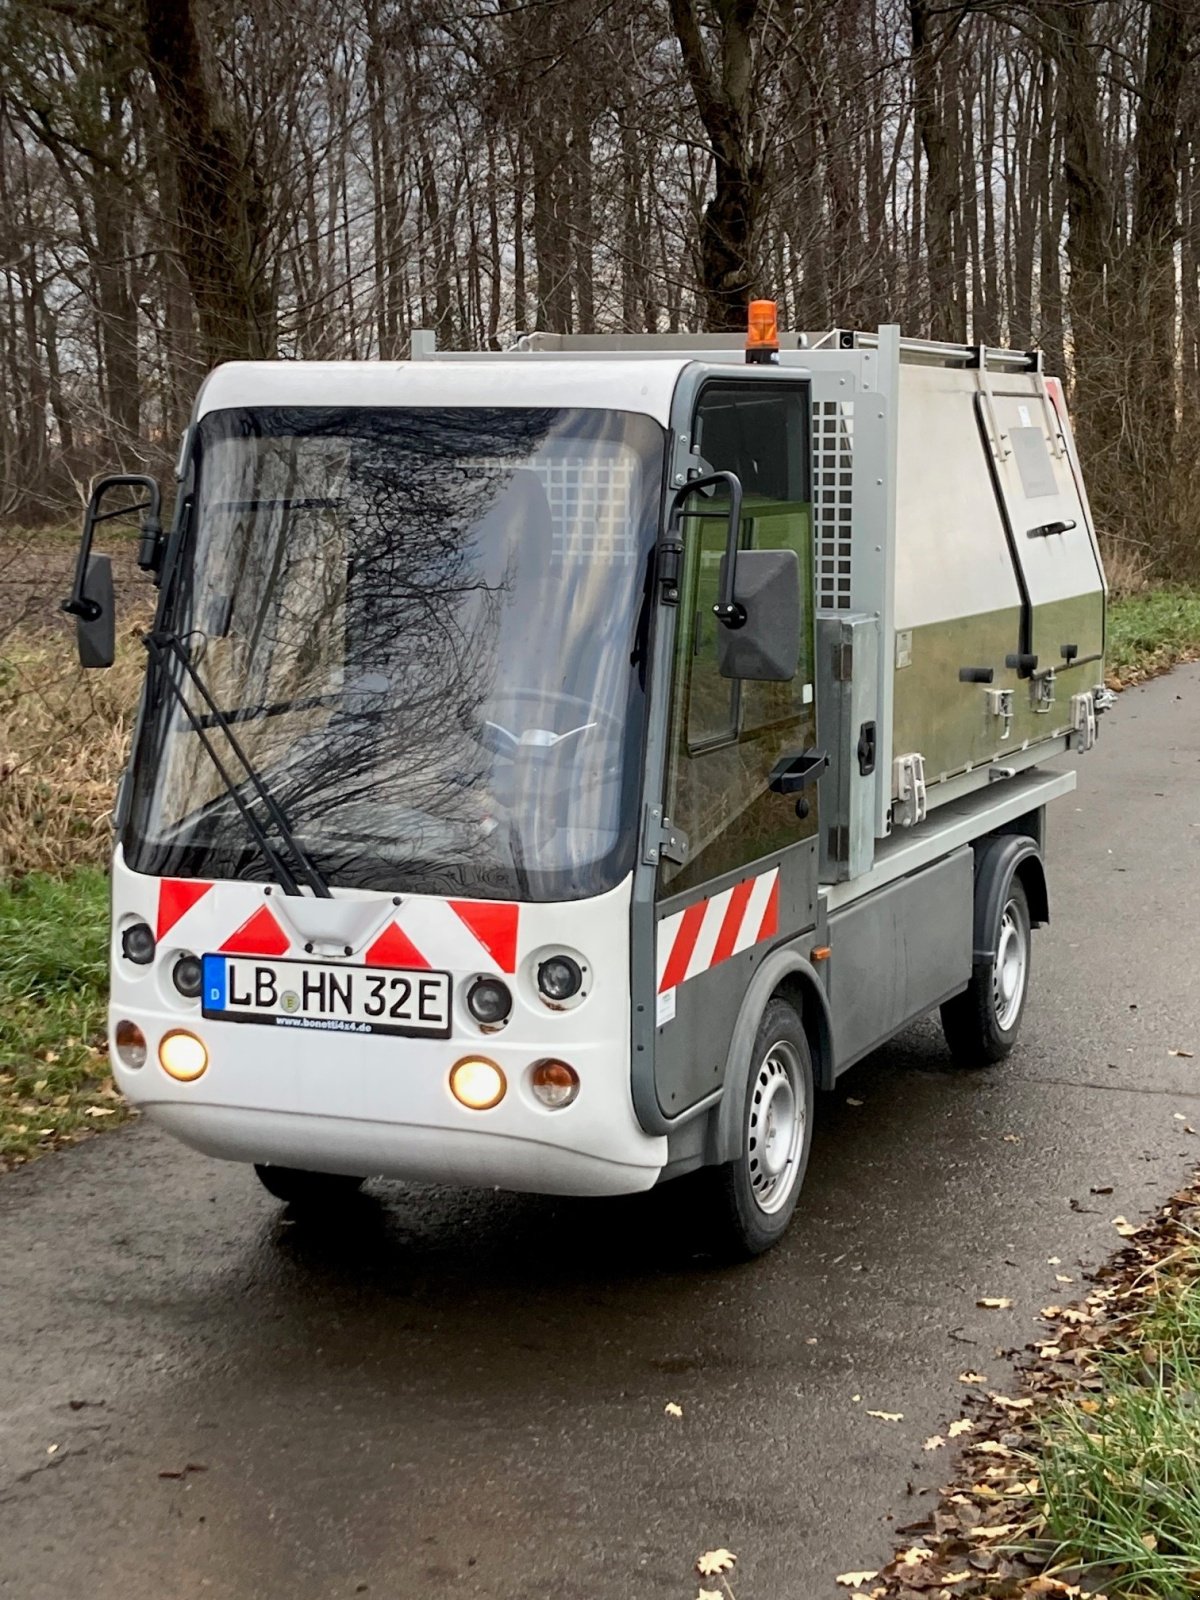 Kommunalfahrzeug des Typs Esagono mini E-truck Gastone, Gebrauchtmaschine in Wedemark (Bild 3)